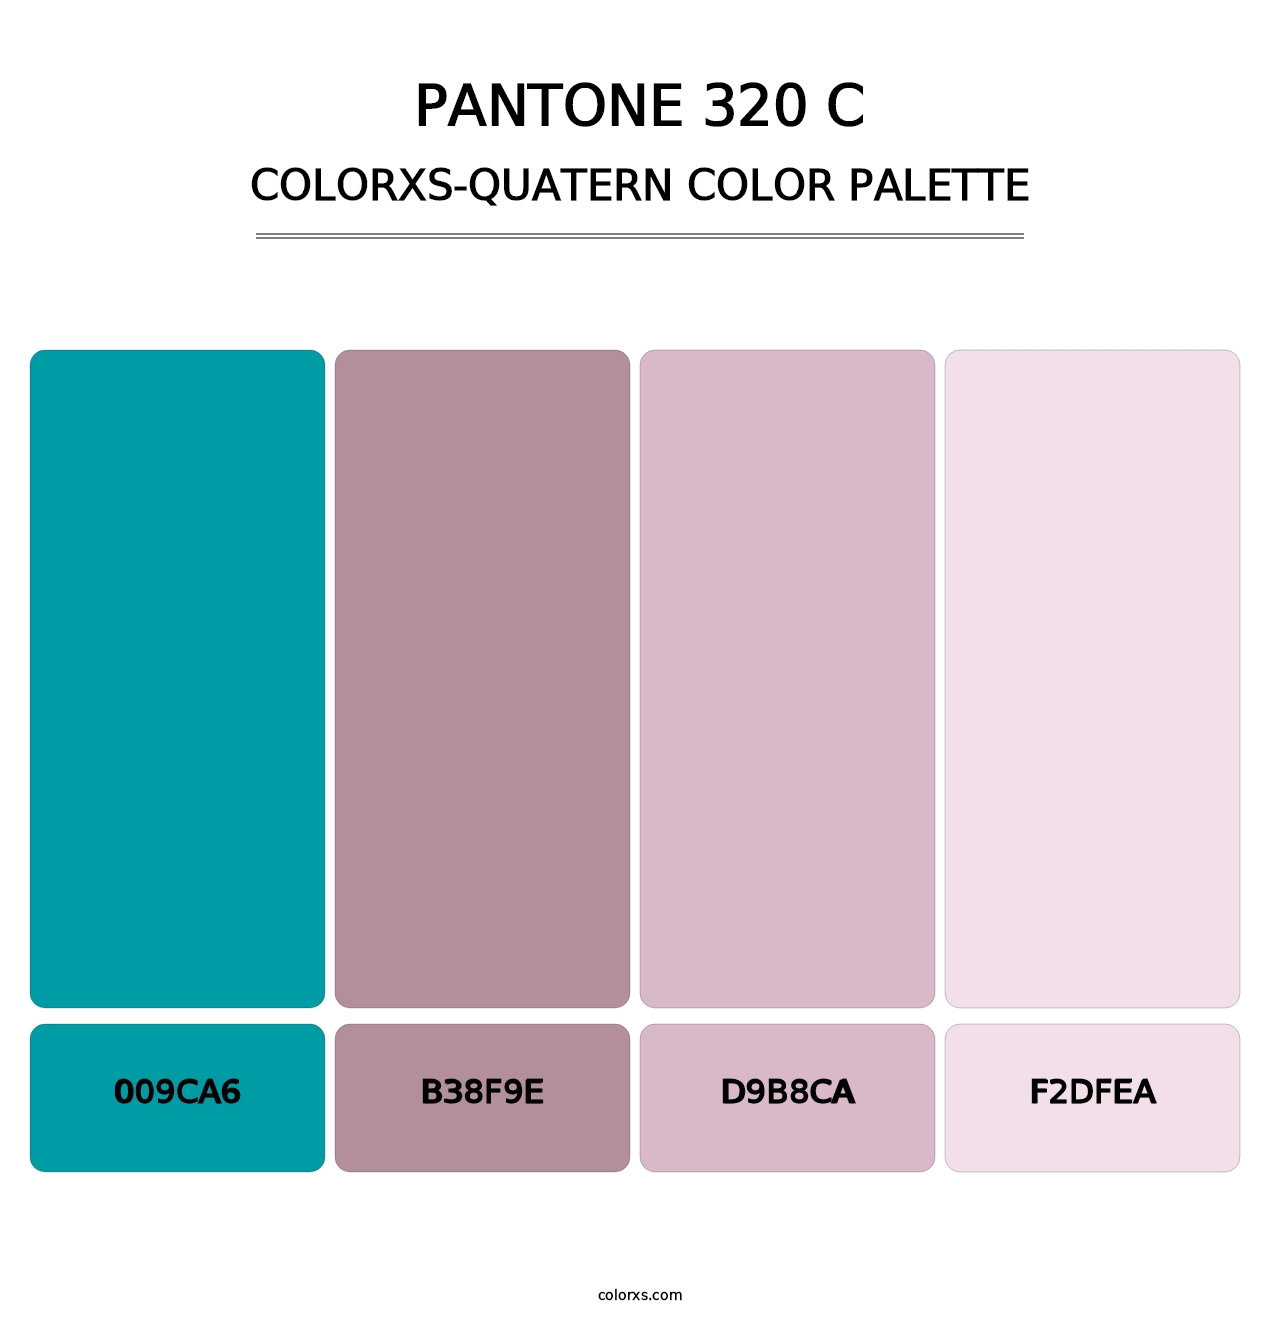 PANTONE 320 C - Colorxs Quatern Palette